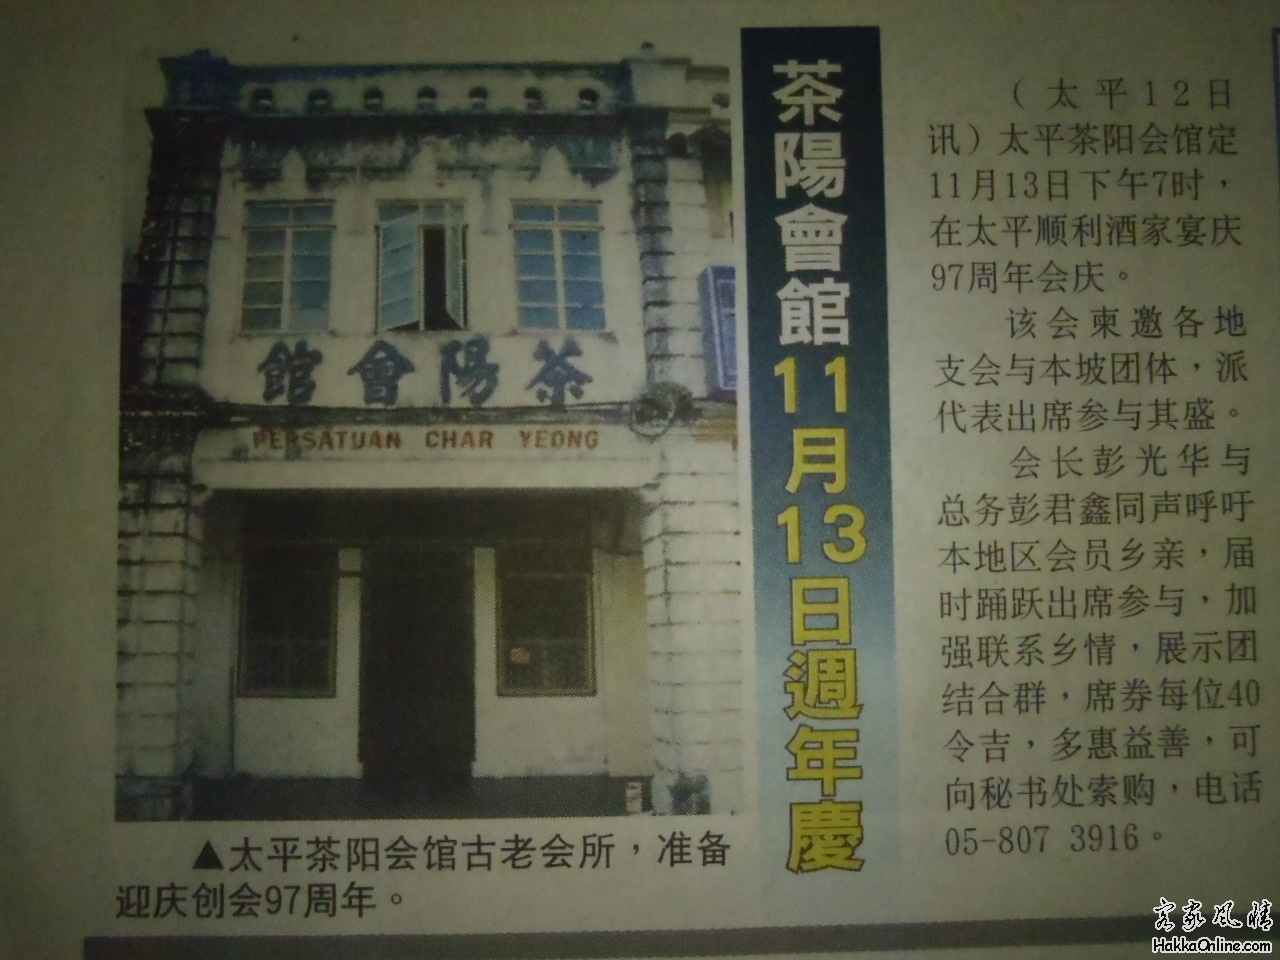 马来西亚太平茶阳会馆举办97周年庆典